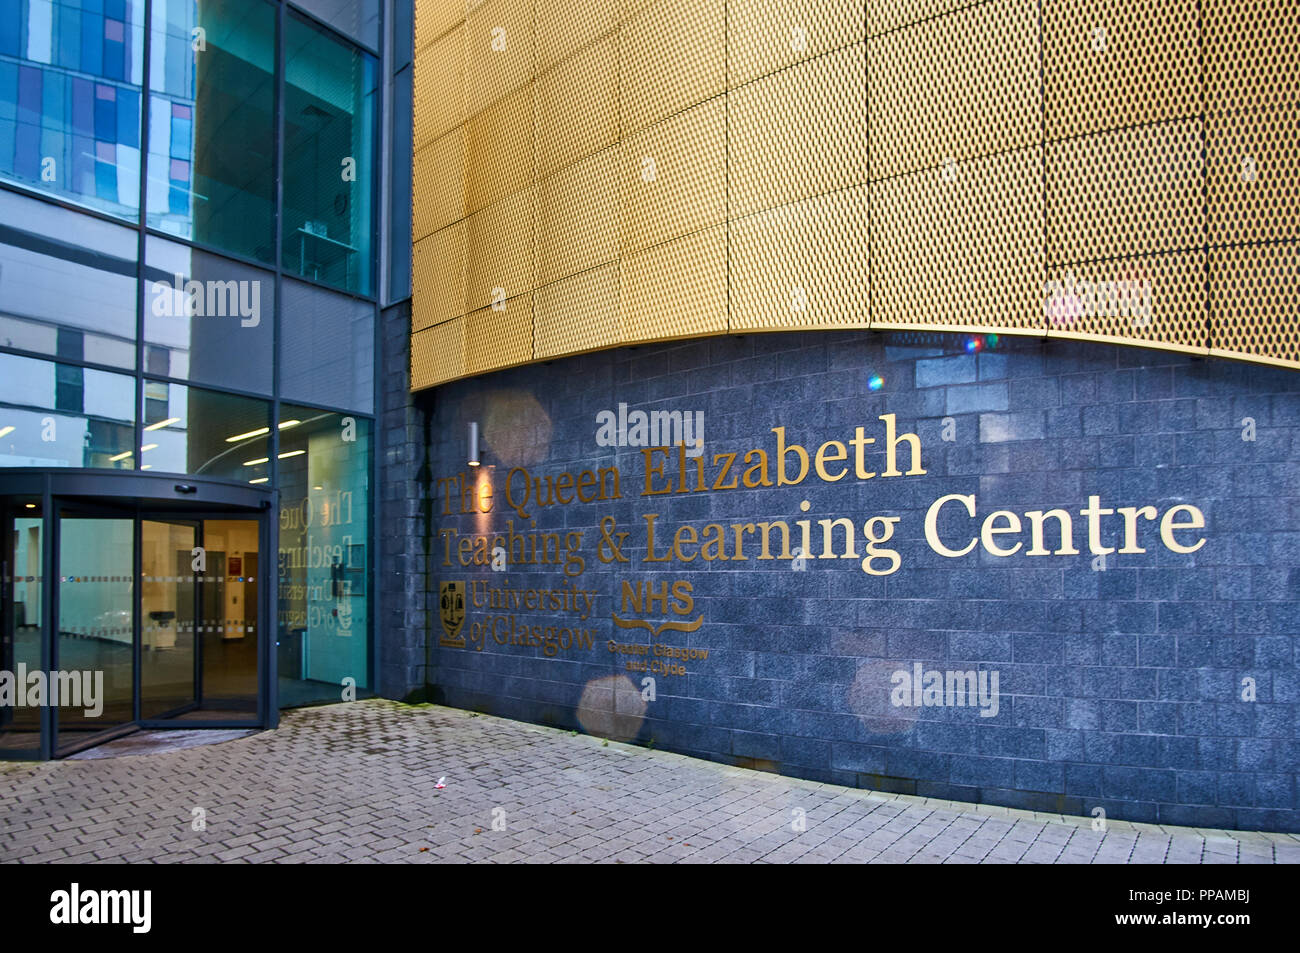 Queen Elizabeth Centro de Enseñanza y Aprendizaje en Glasgow, Escocia. Foto de stock